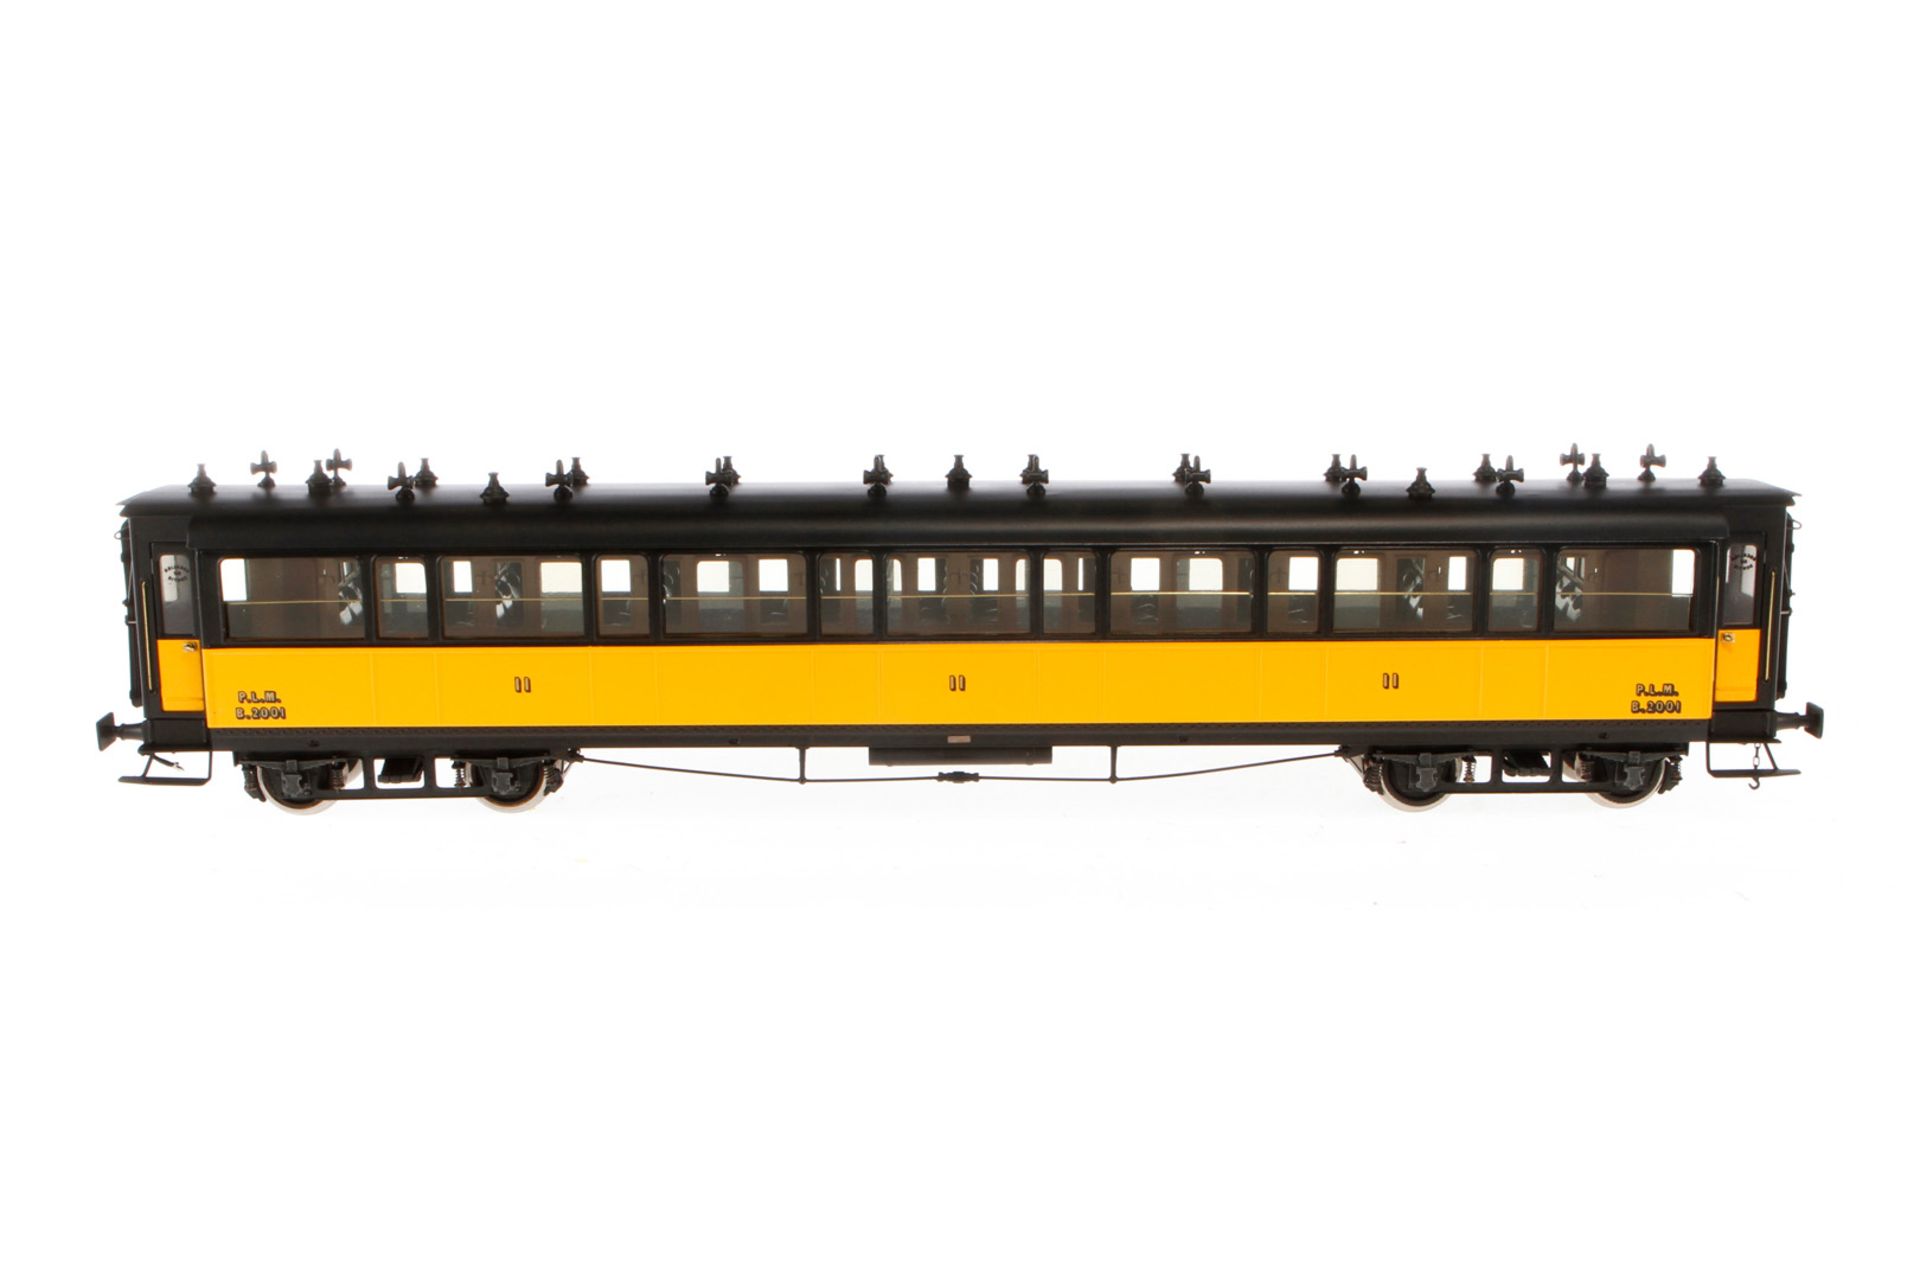 Elettren franz. Personenewagen 2001 PLM, Spur 0, 2. Klasse, schwarz/gelb, mit Inneneinrichtung und